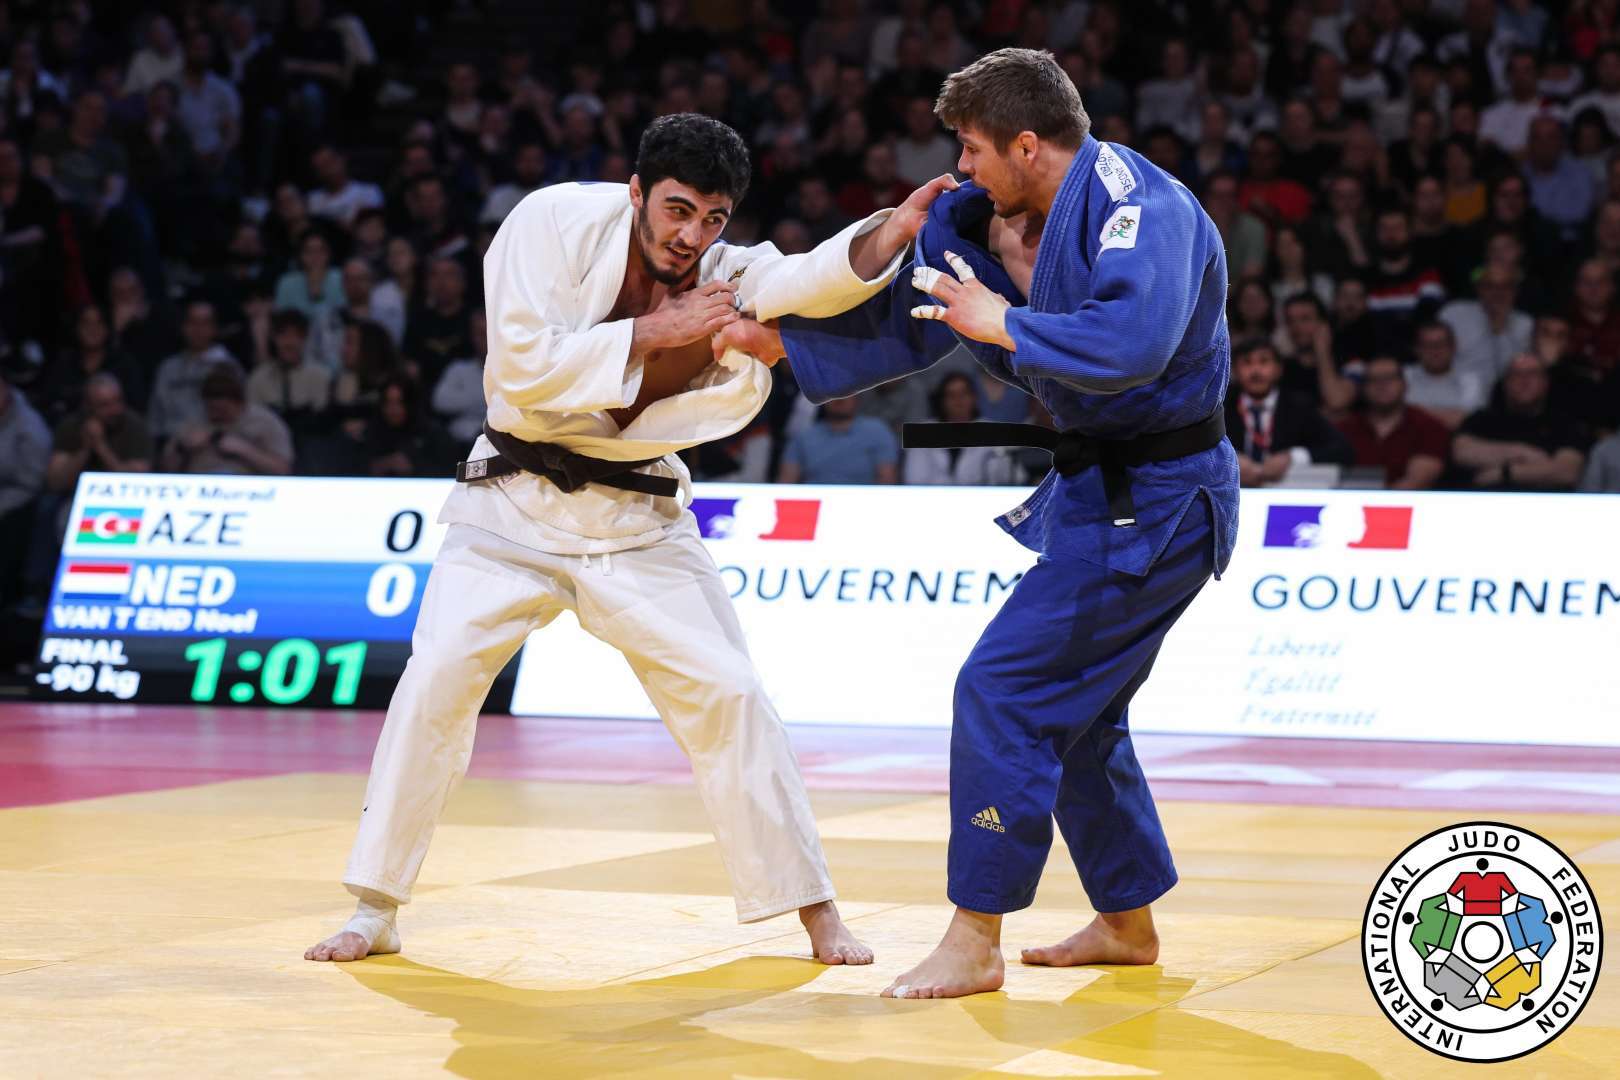 img/posts/judo-club-2012-uzvleri-boyuk-debilqe-turnirinde-2-medal-qazandilar-2023-02-06-142514/4.jpg